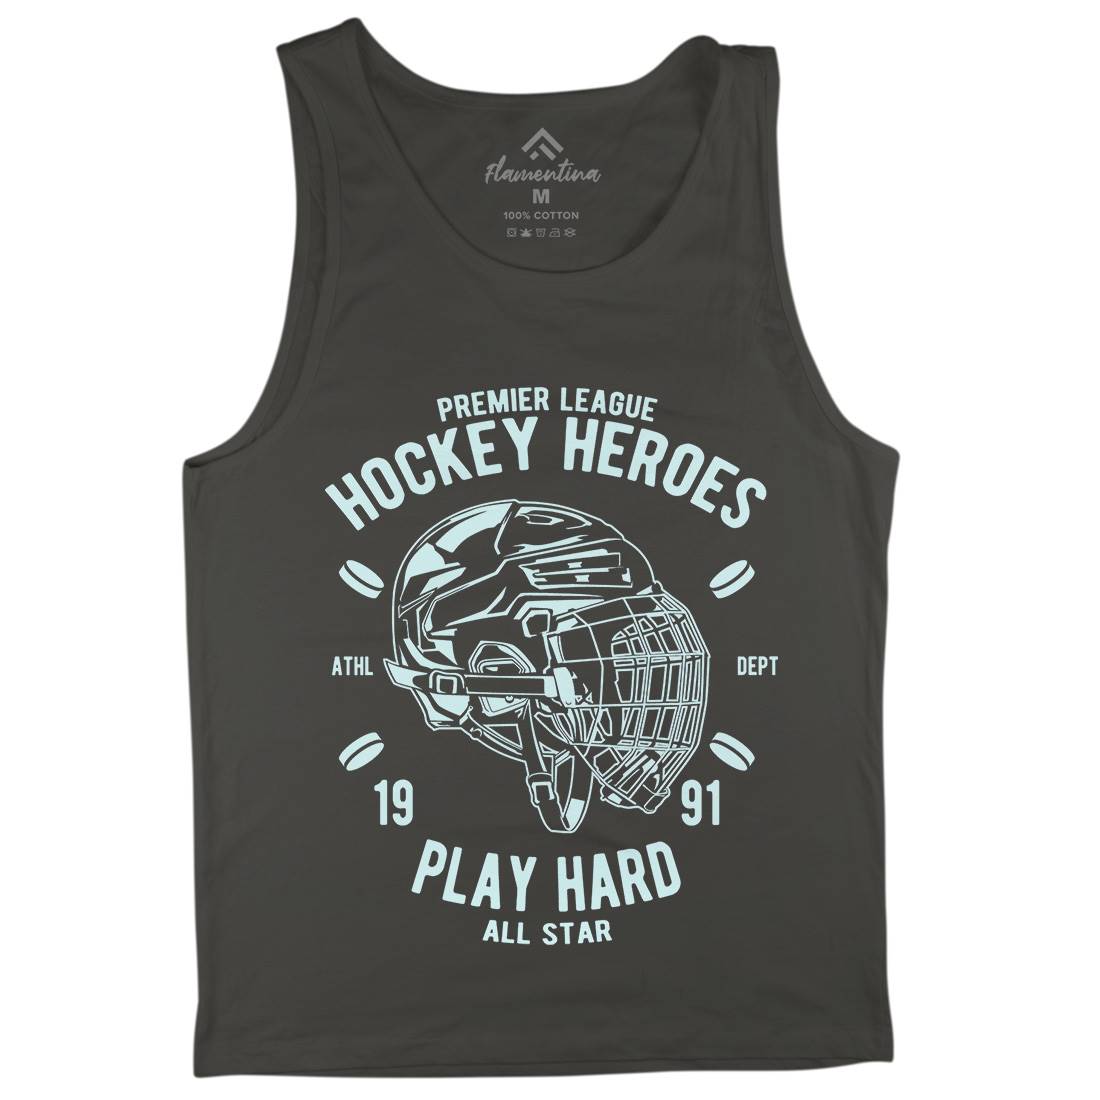 Hockey Heroes Mens Tank Top Vest Sport A064